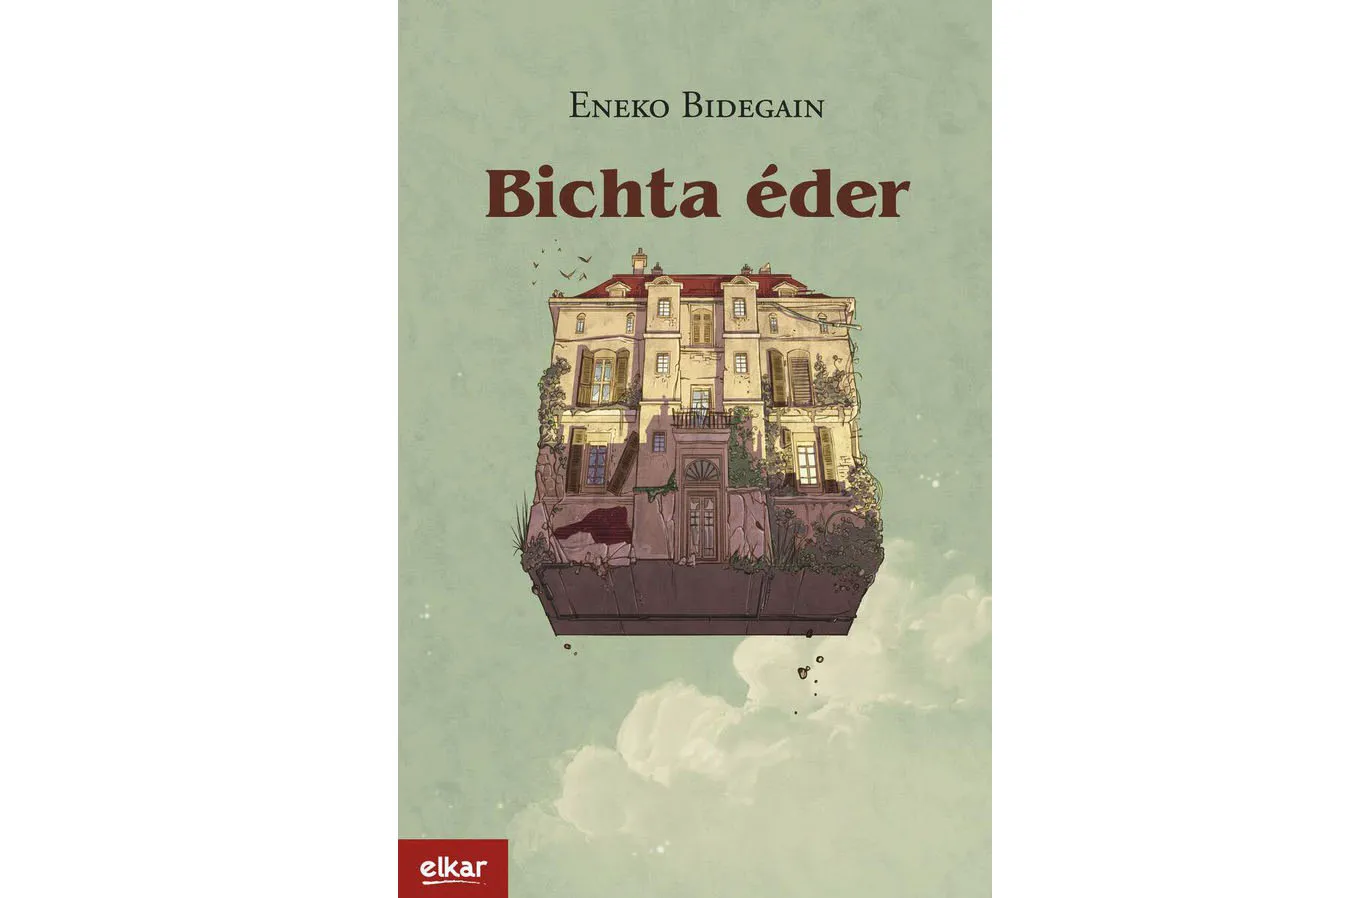 Presentación del libro "Bichta éder"